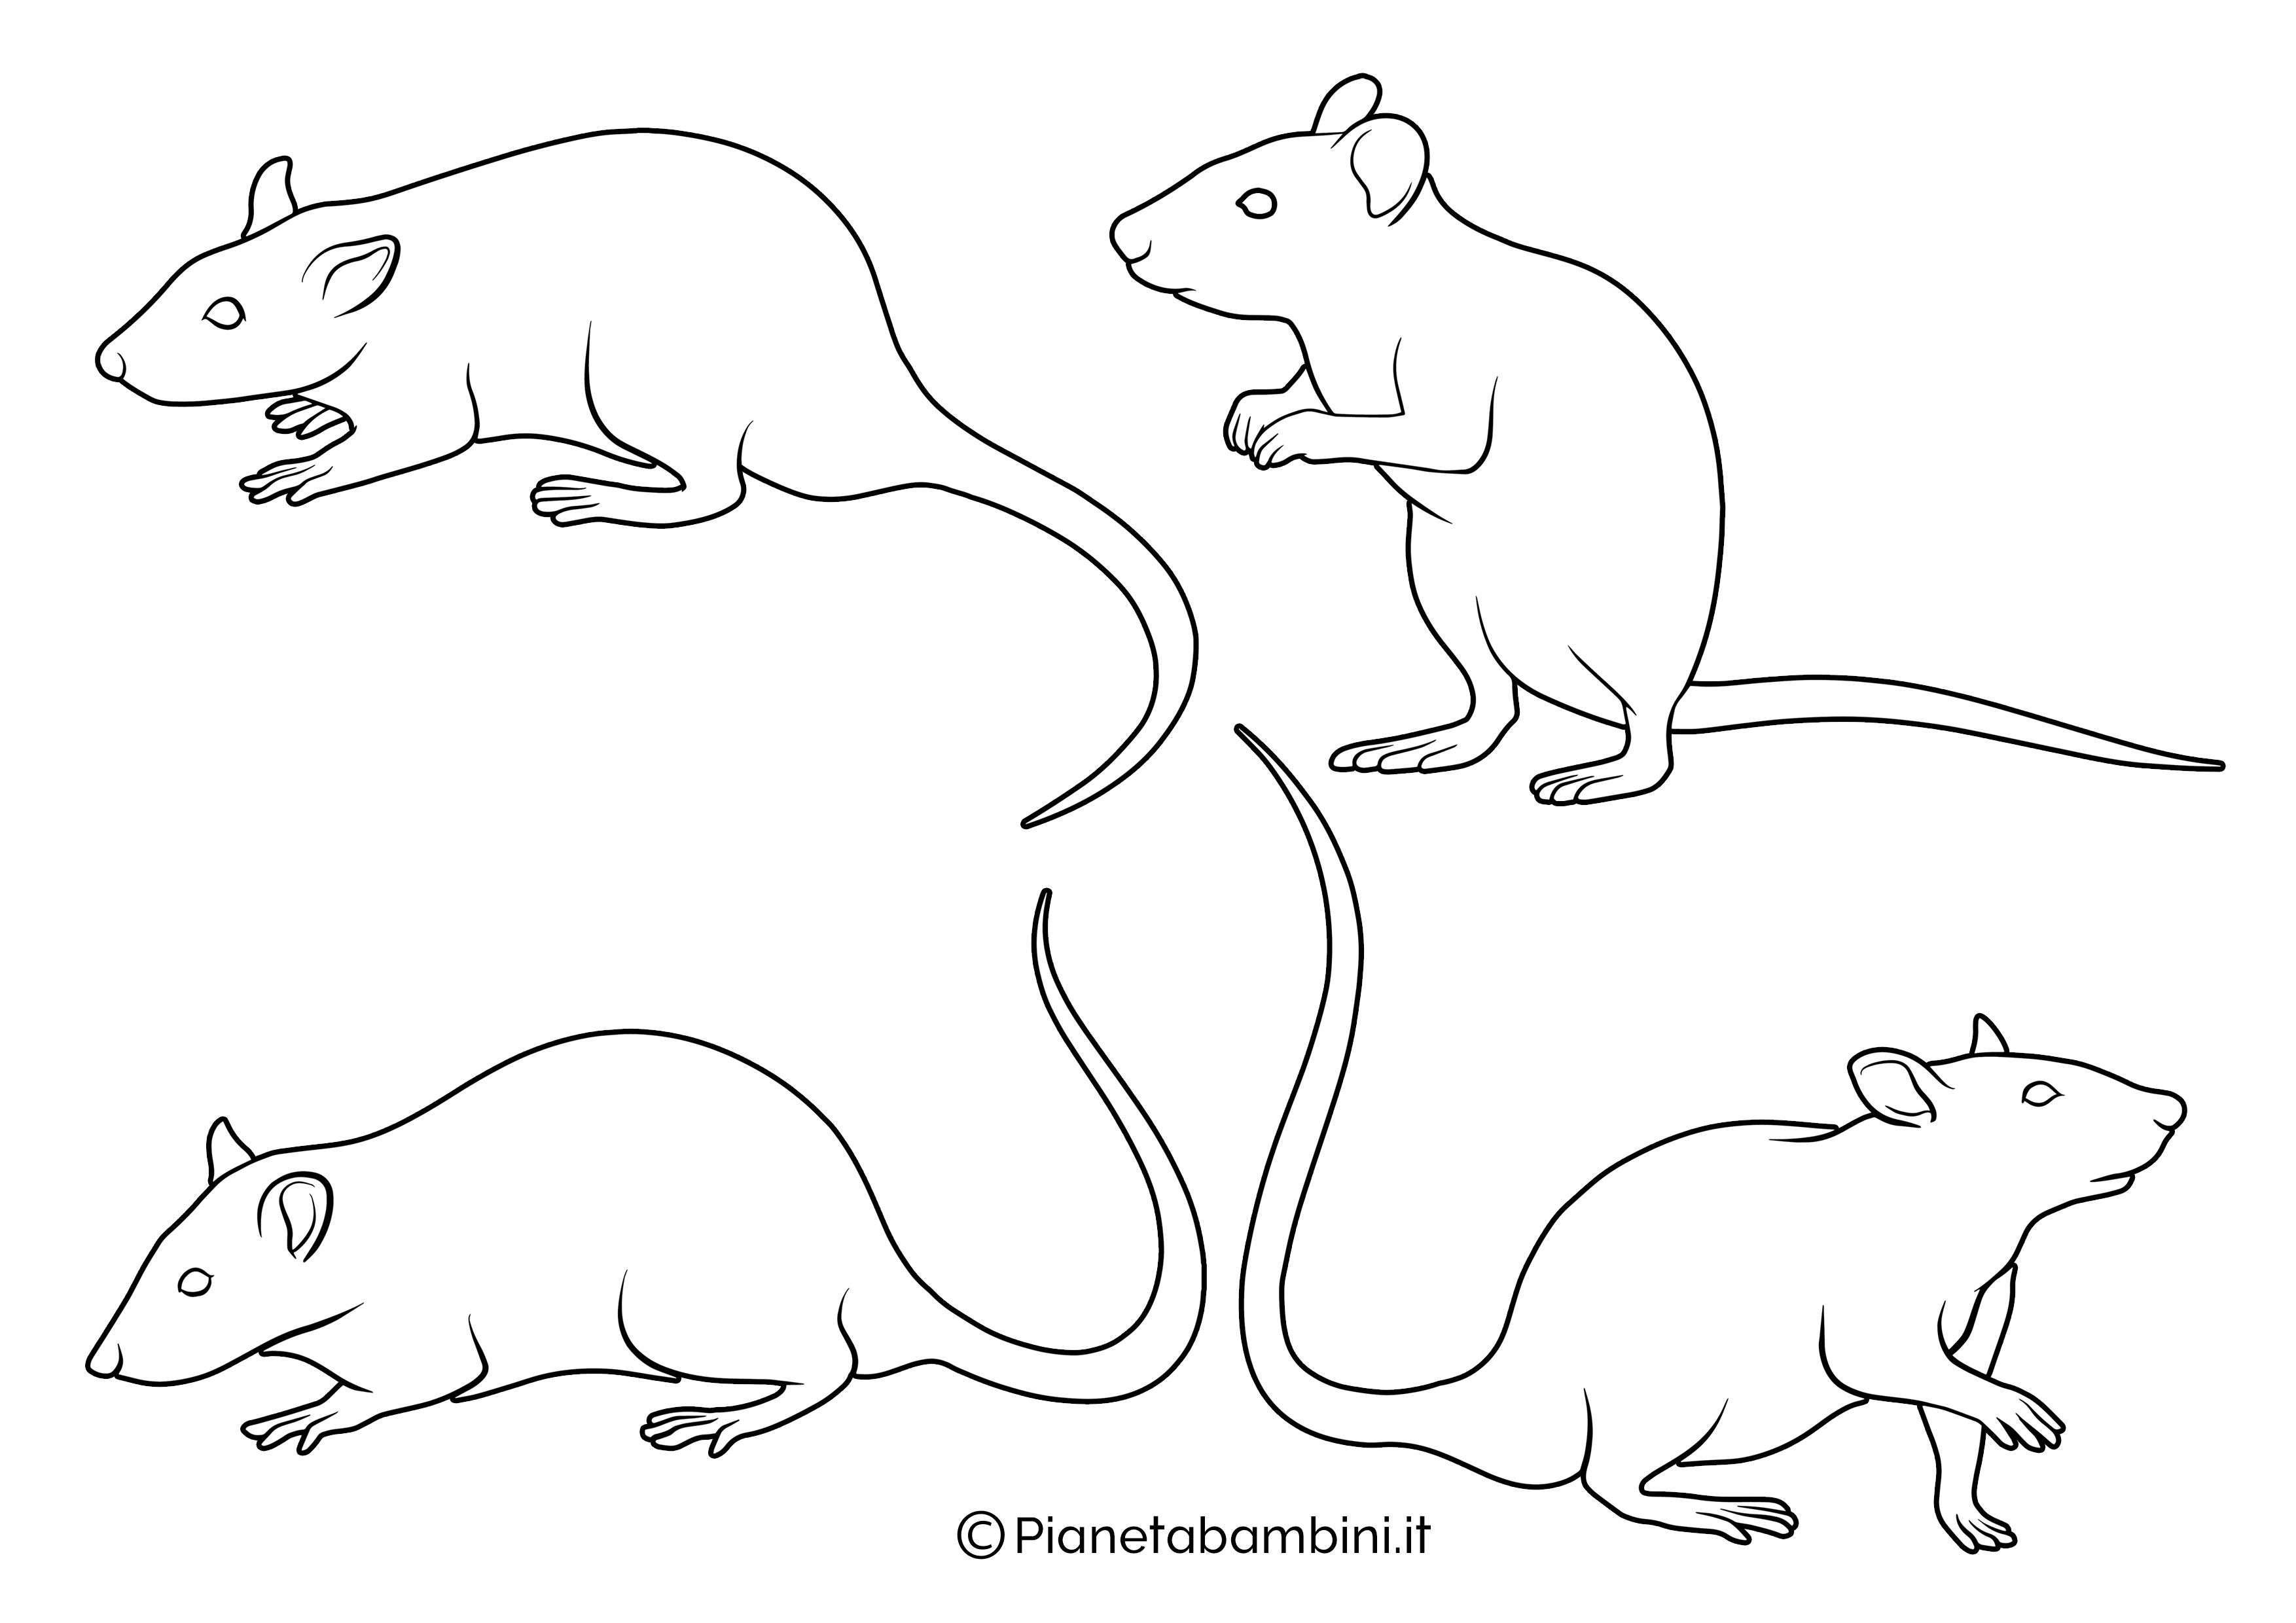 Sagome piccole di topi da ritagliare 1